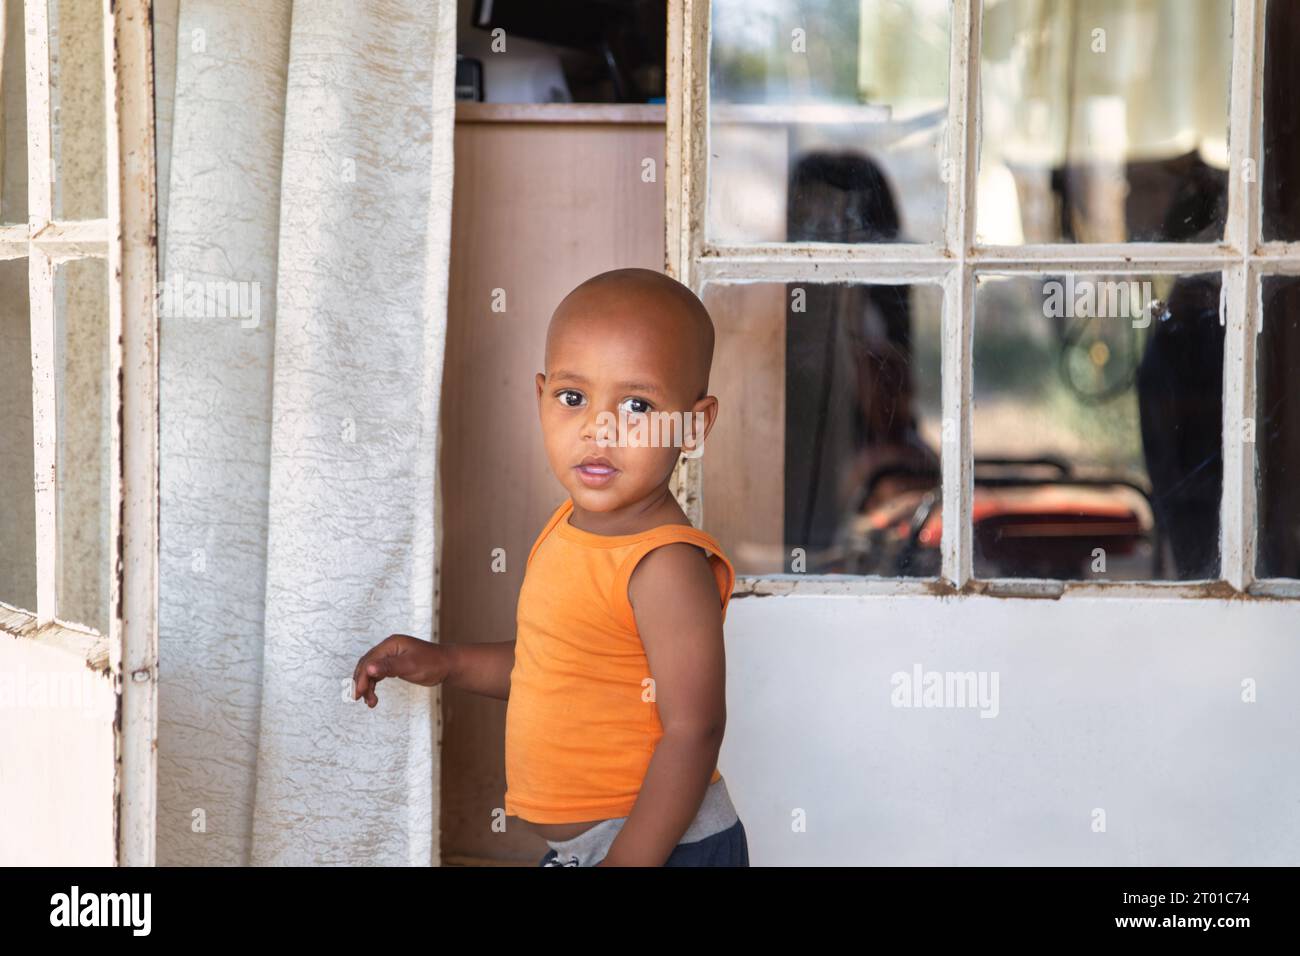 afrikanisches Kind vor dem Haus im Township, in einer orangefarbenen Weste, vor der Tür stehend Stockfoto